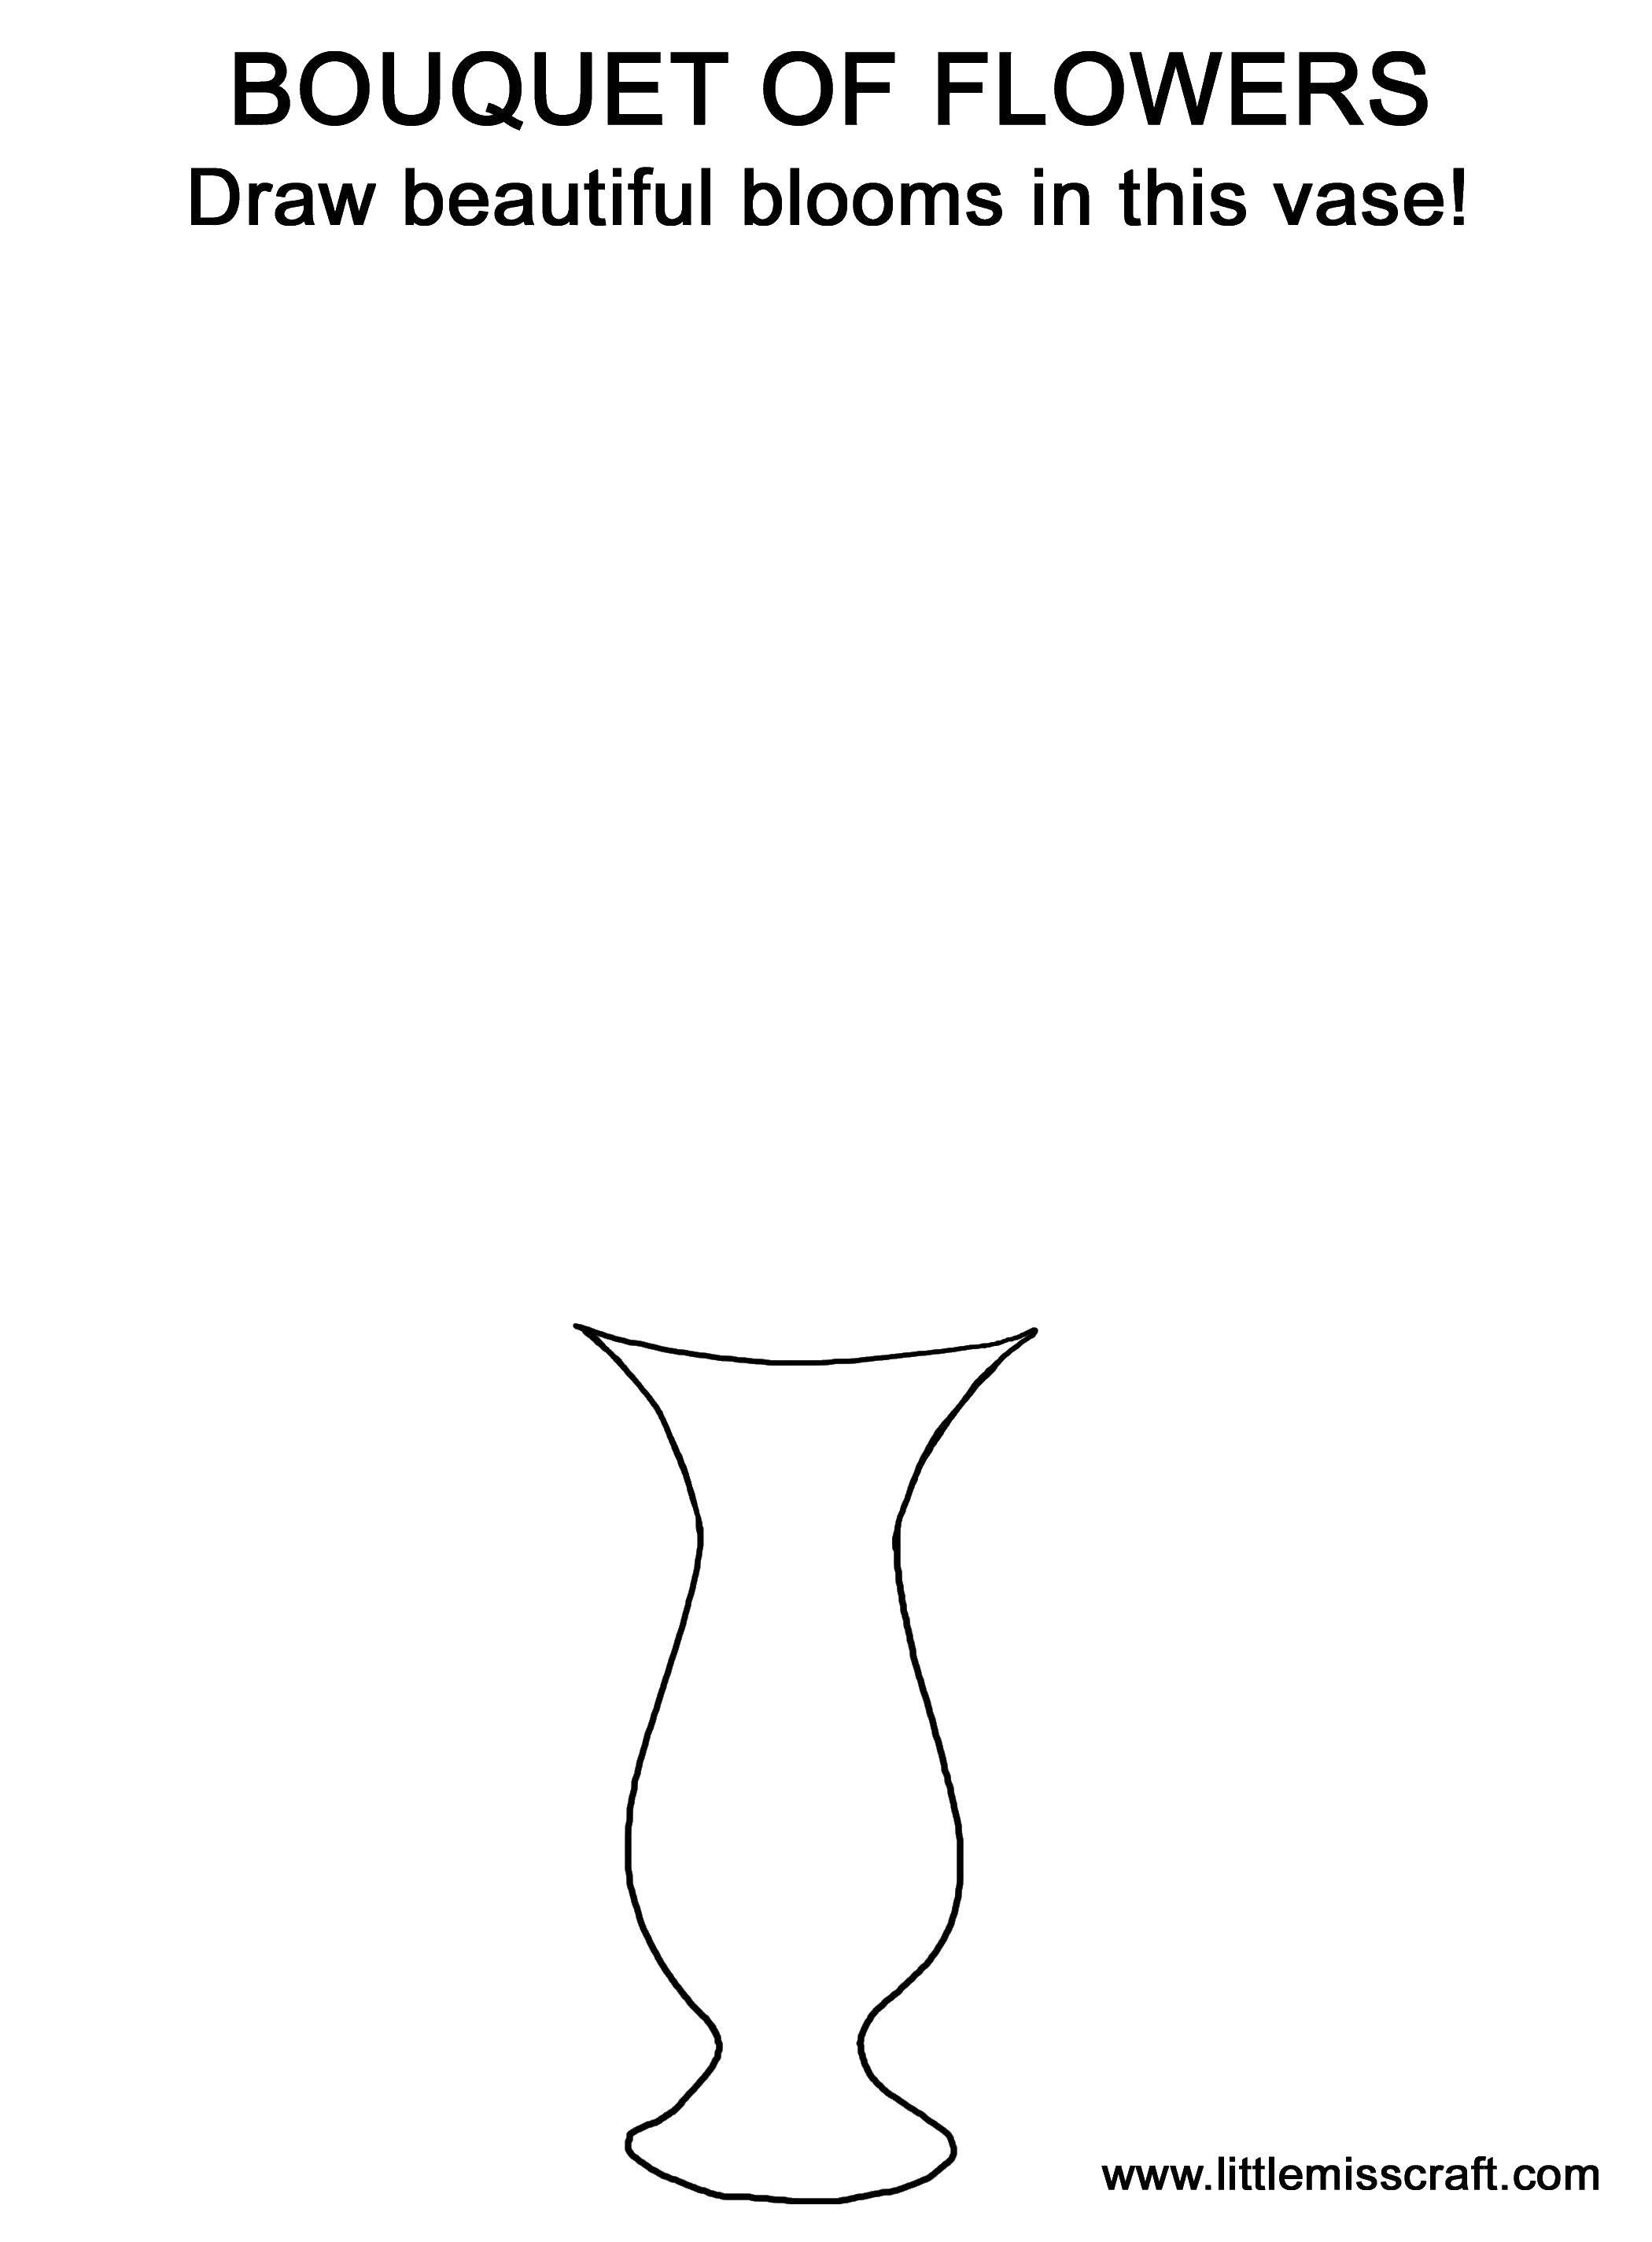 Coloring Kontur vase. Category Vase. Tags:  the contour, a vase.